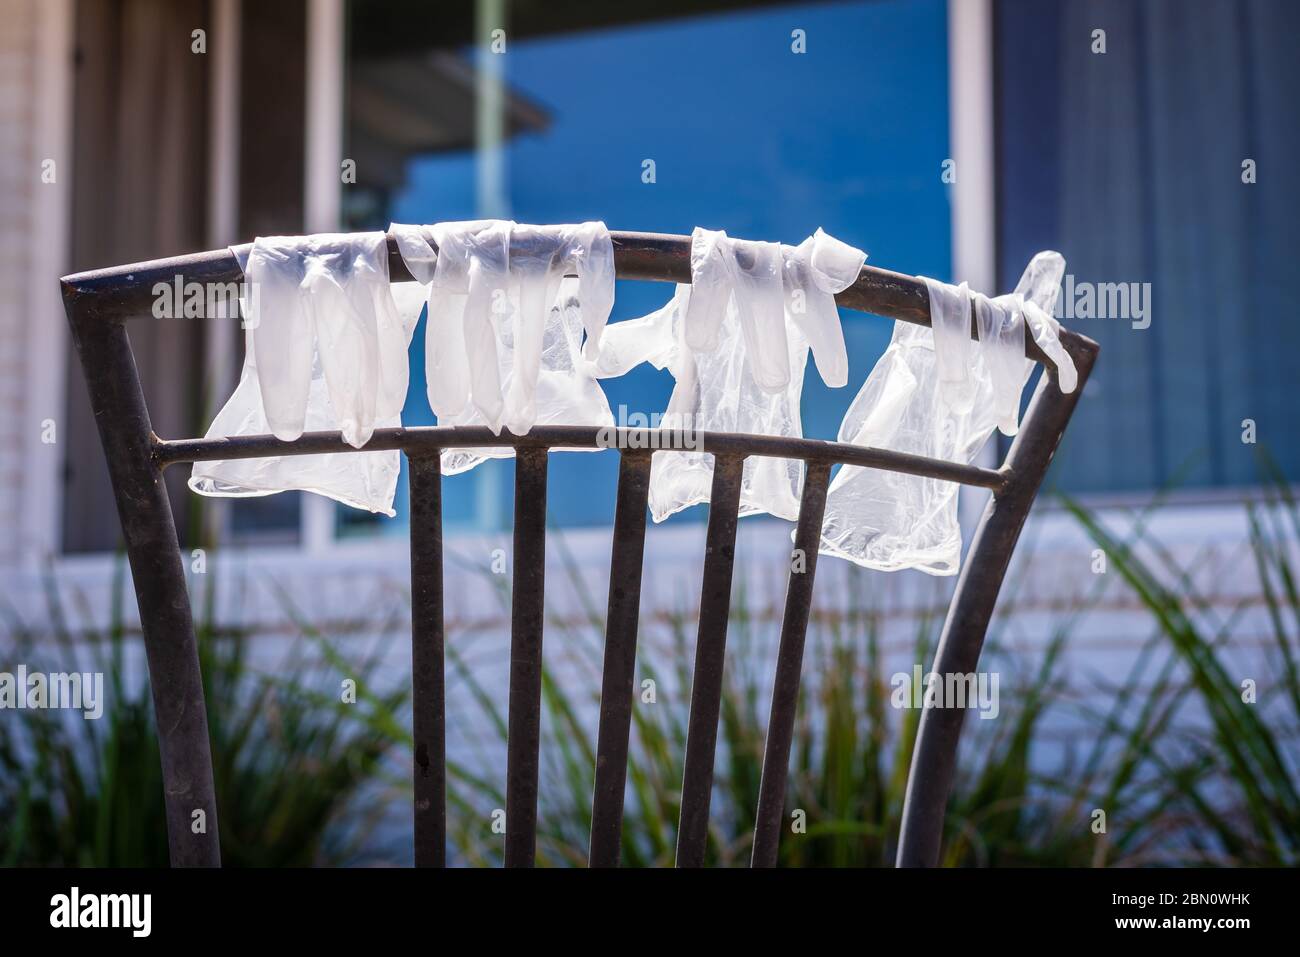 Guantes de plástico lavados desechables colgando en la parte posterior de la silla para secar durante la pandemia de Covid-19. Foto de stock